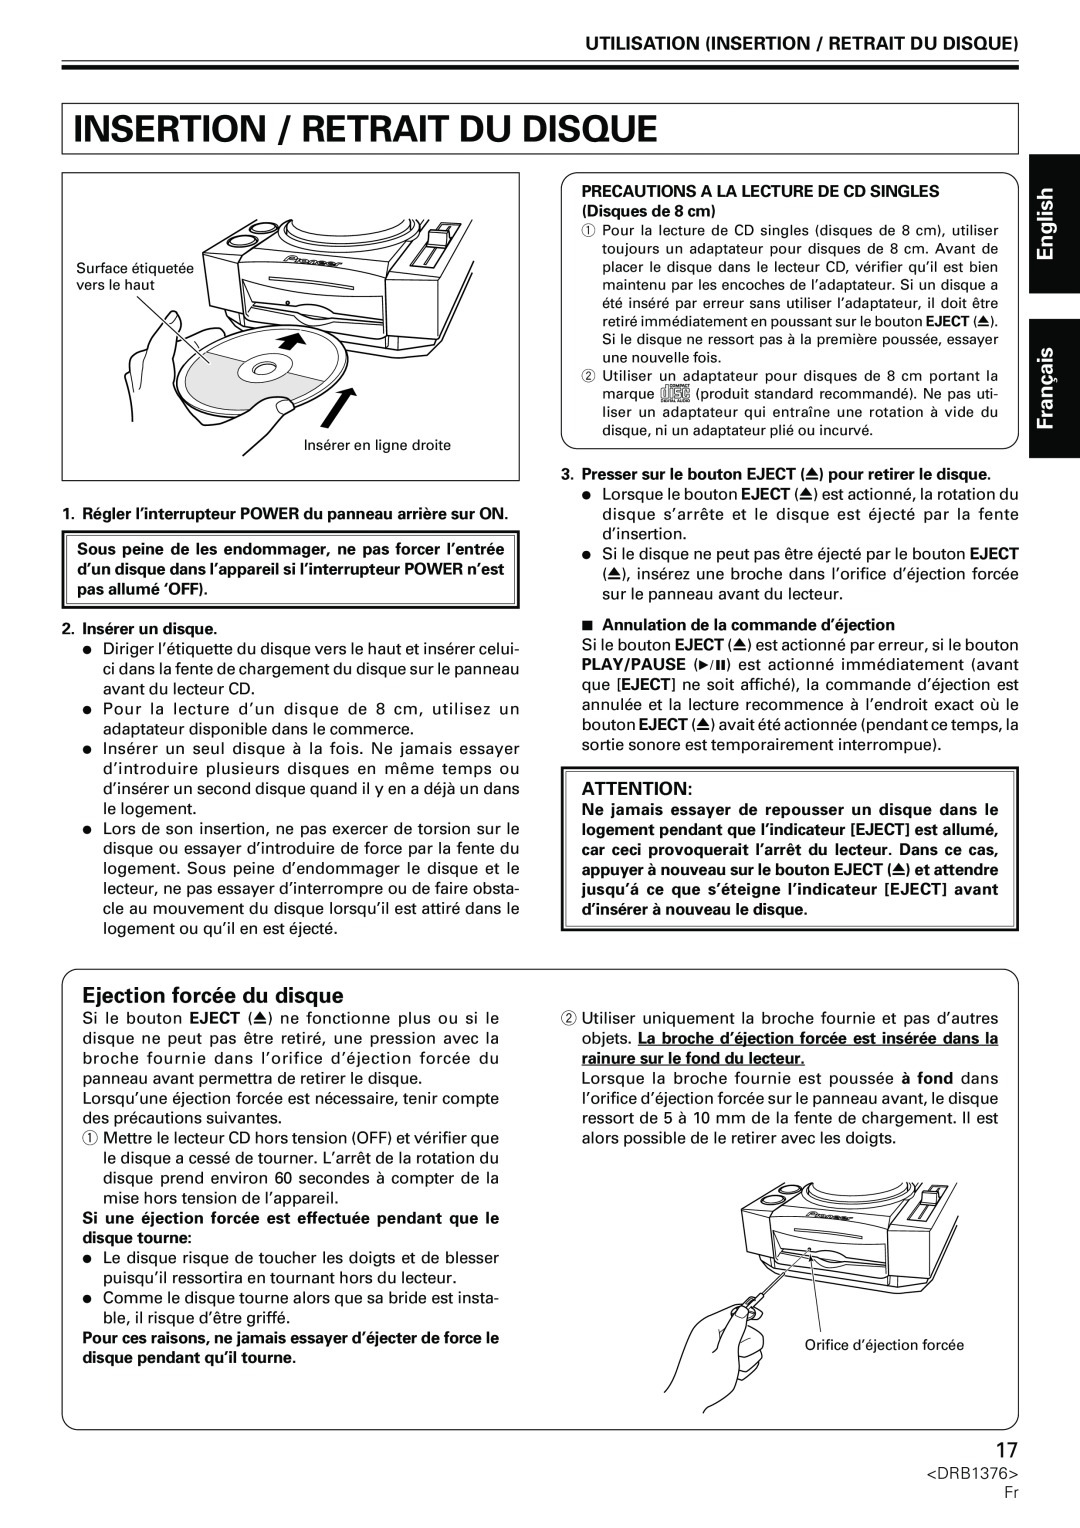 Pioneer CDJ-200 manual Ejection forcée du disque, Utilisation Insertion / Retrait Du Disque, English Français 